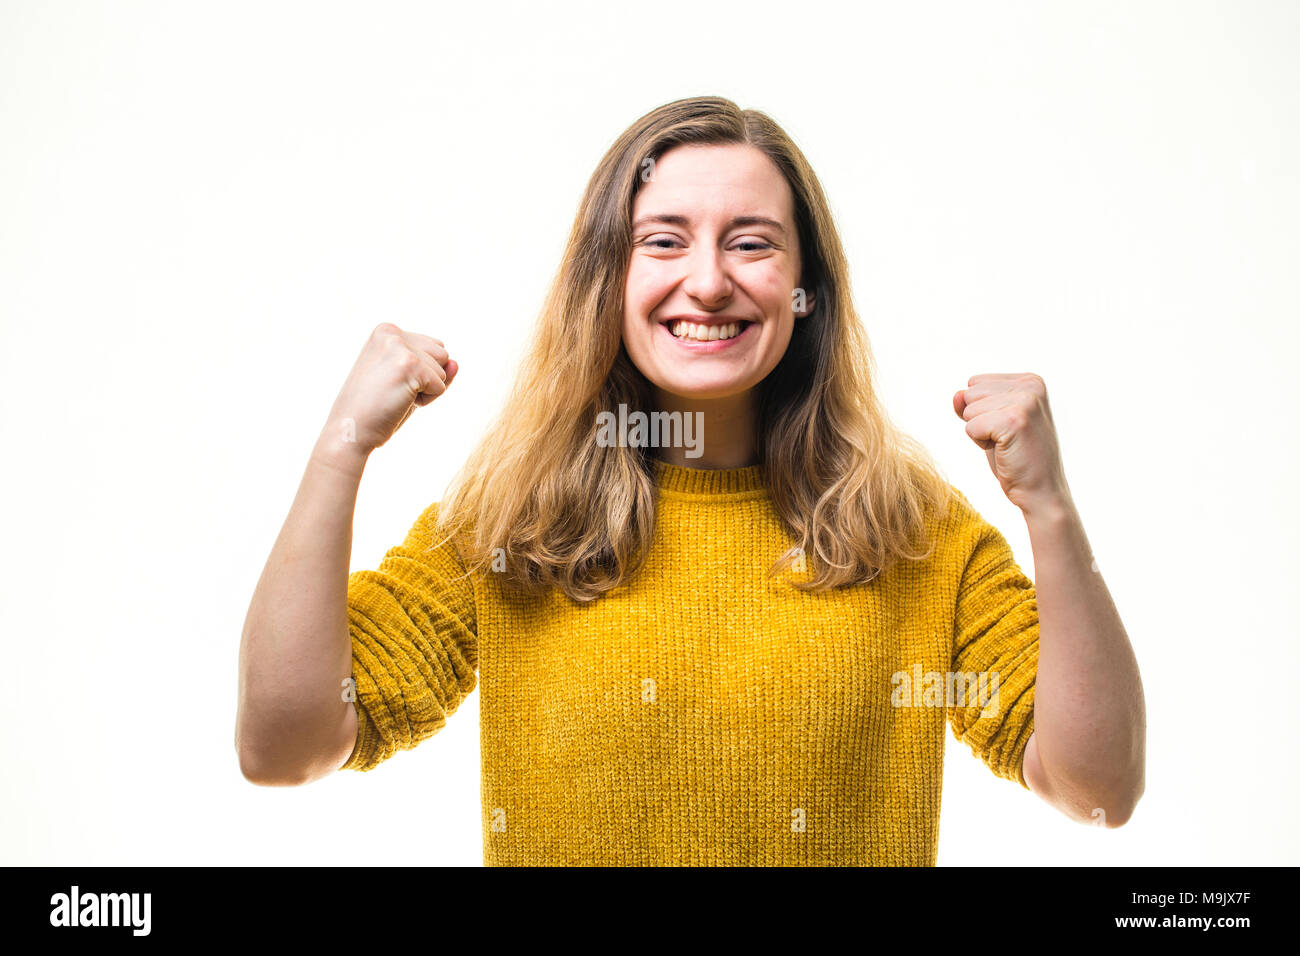 Celebrando el éxito - feliz sonriente joven entusiasta positivo mujer caucásica chica , el bombeo de sus puños en exuberancia, llena de pasión y compromiso - UK Foto de stock